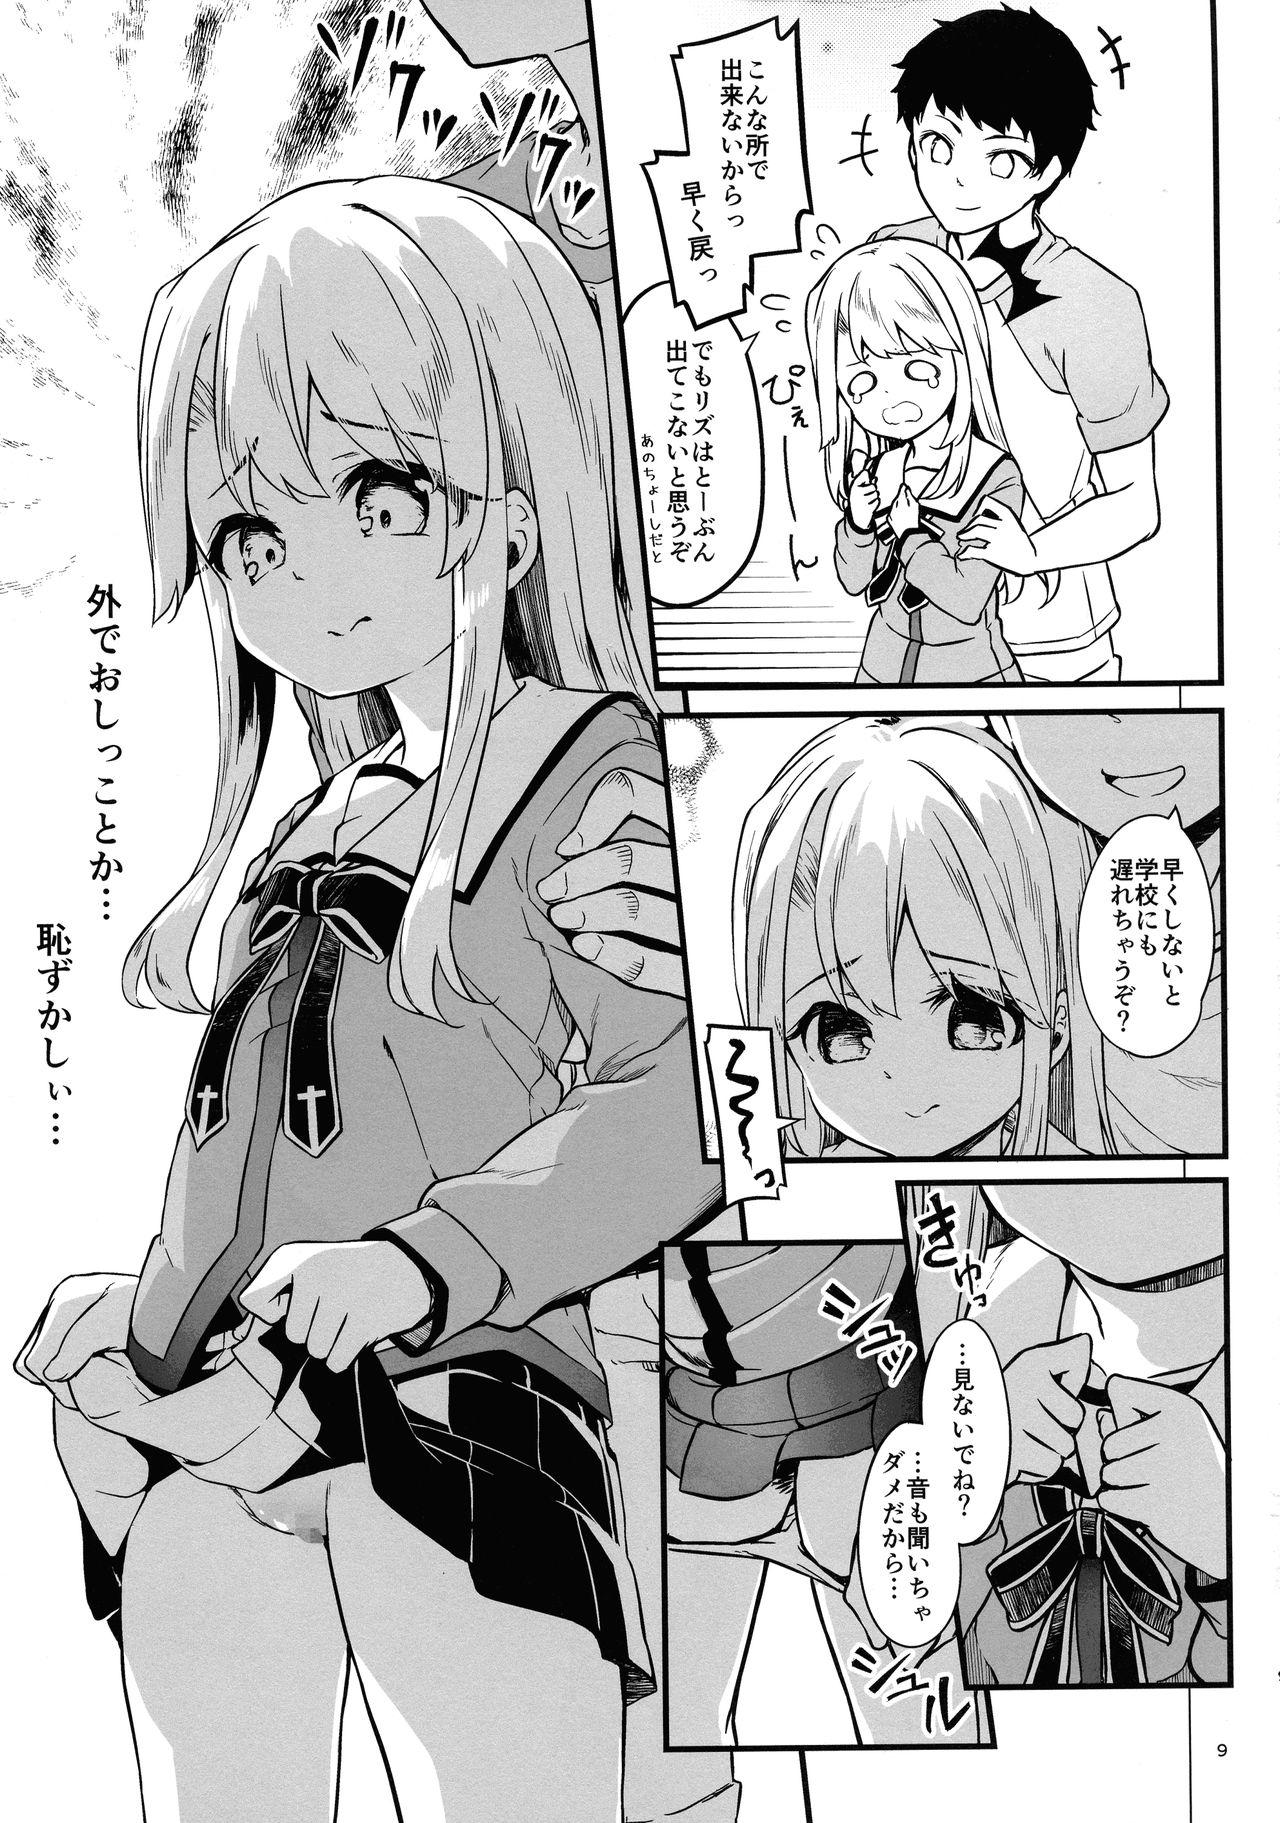 Titten Illyasviel no Onii-chan wa Isogashii - Fate kaleid liner prisma illya Bisexual - Page 9